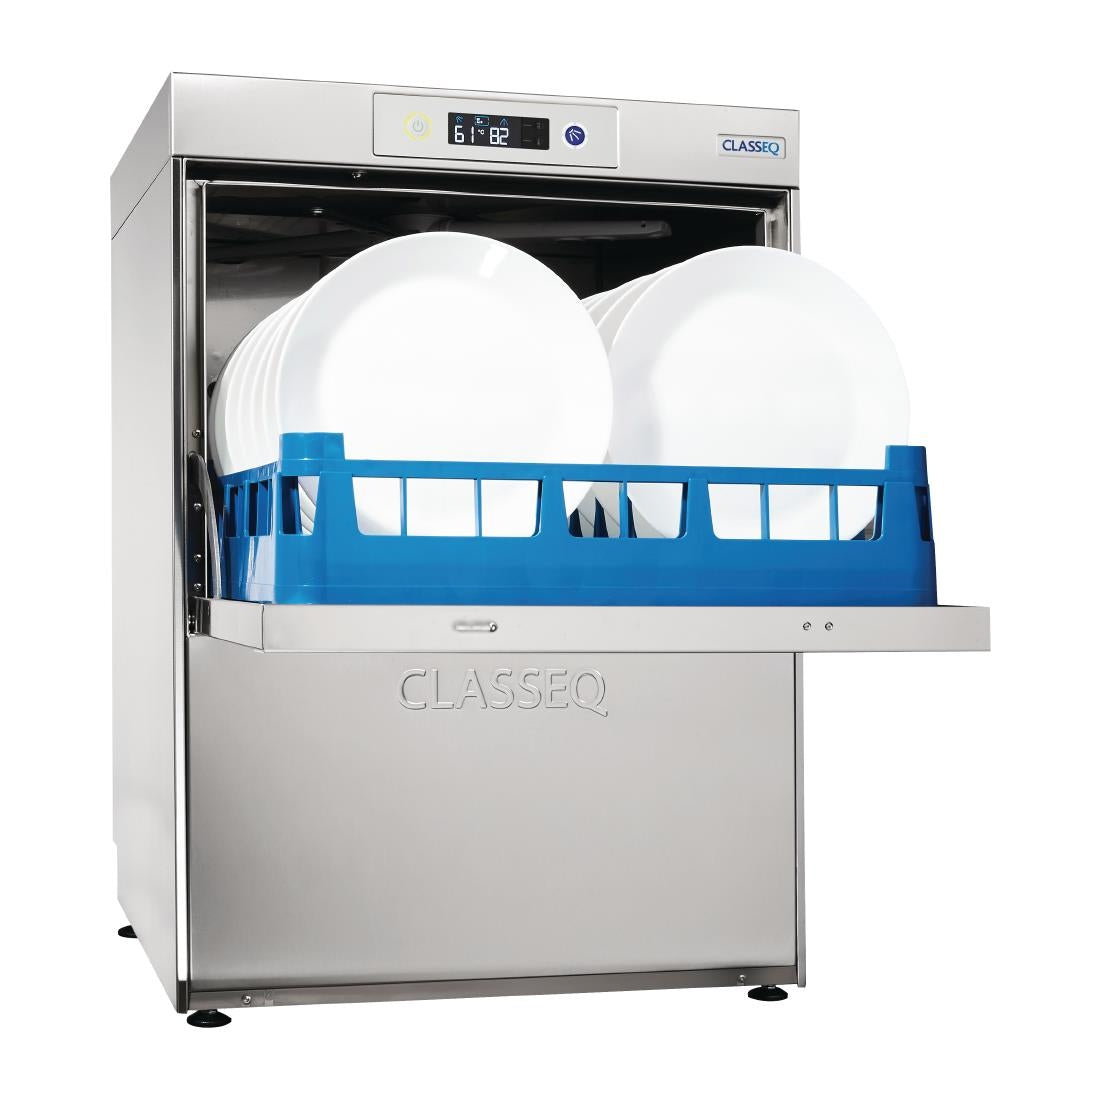 Classeq Dishwasher D500 Duo WS 13A